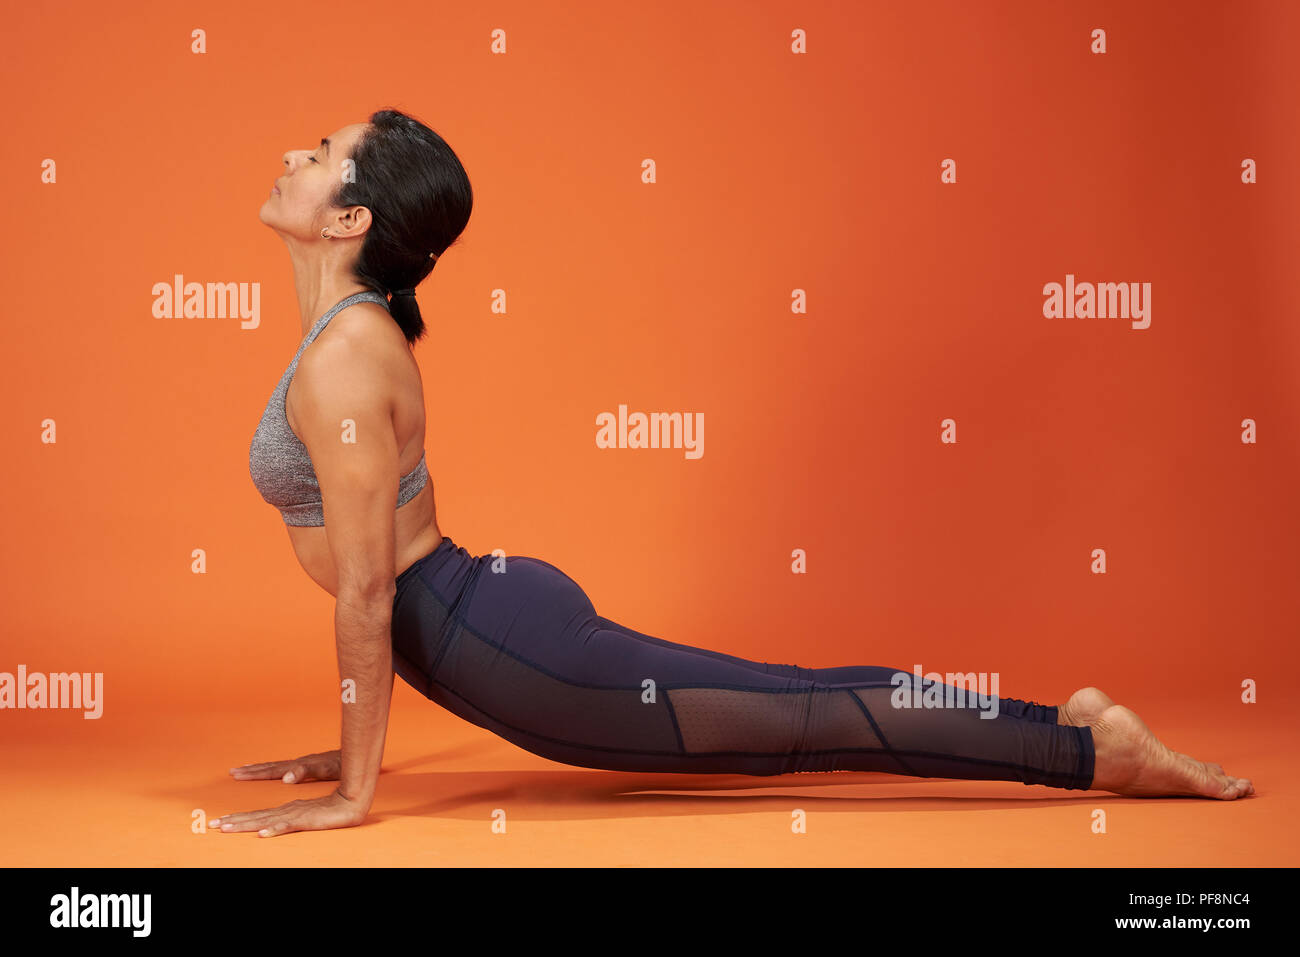 Upward Facing Dog yoga pose woman doing on orange color studio background Stock Photo